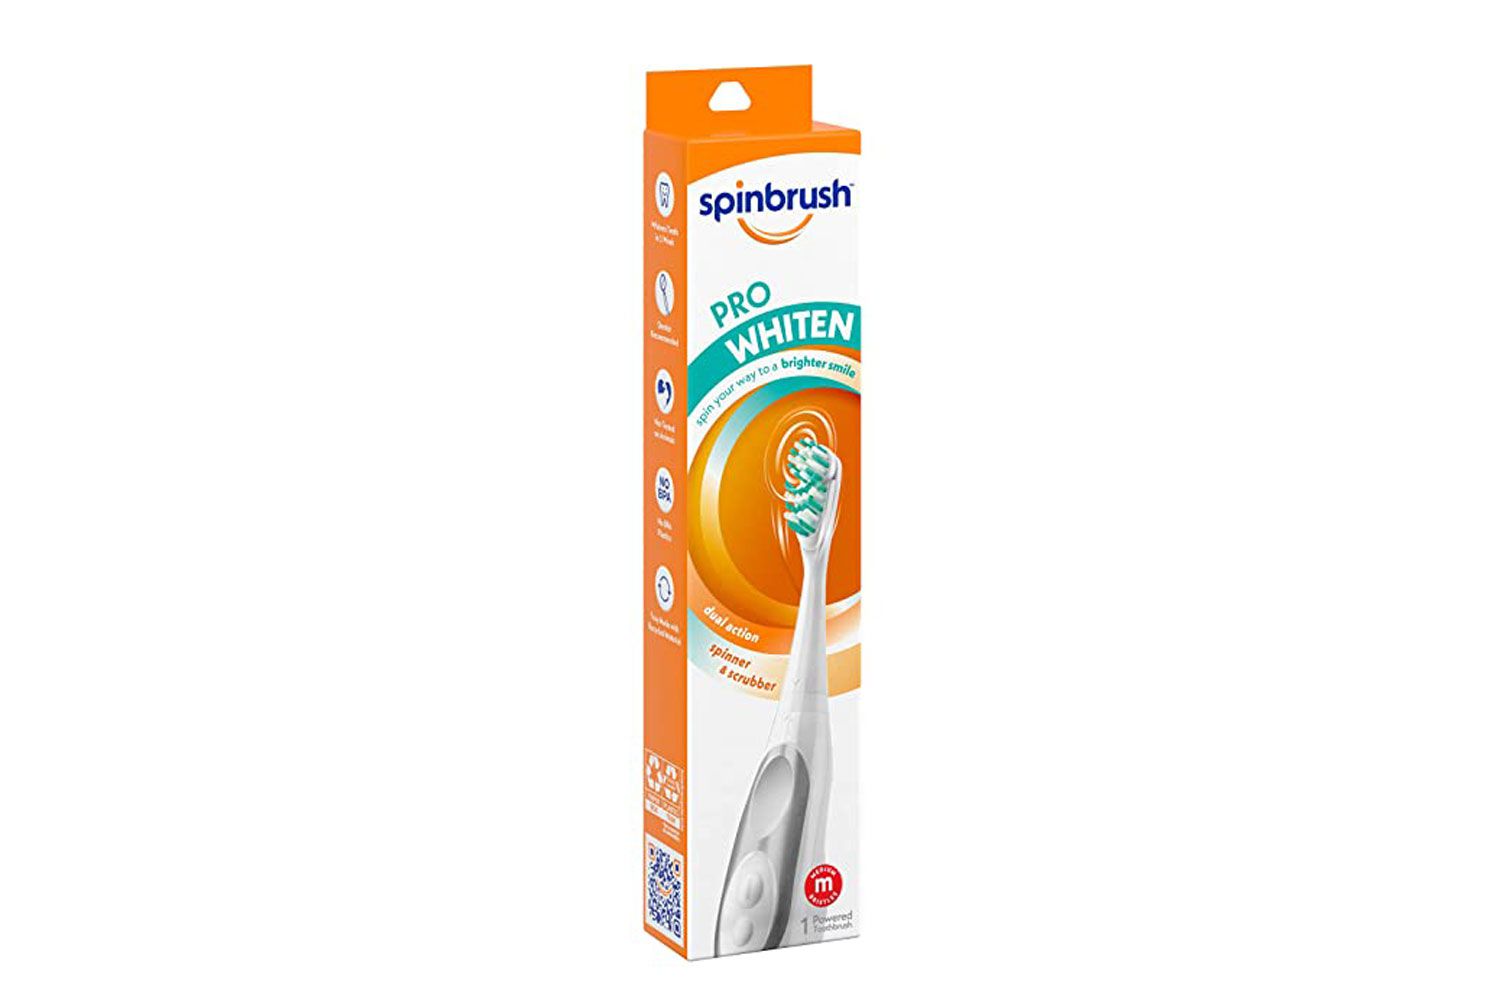 Espr a-d e-dentes de spinbrush Pro Whiten em baterias